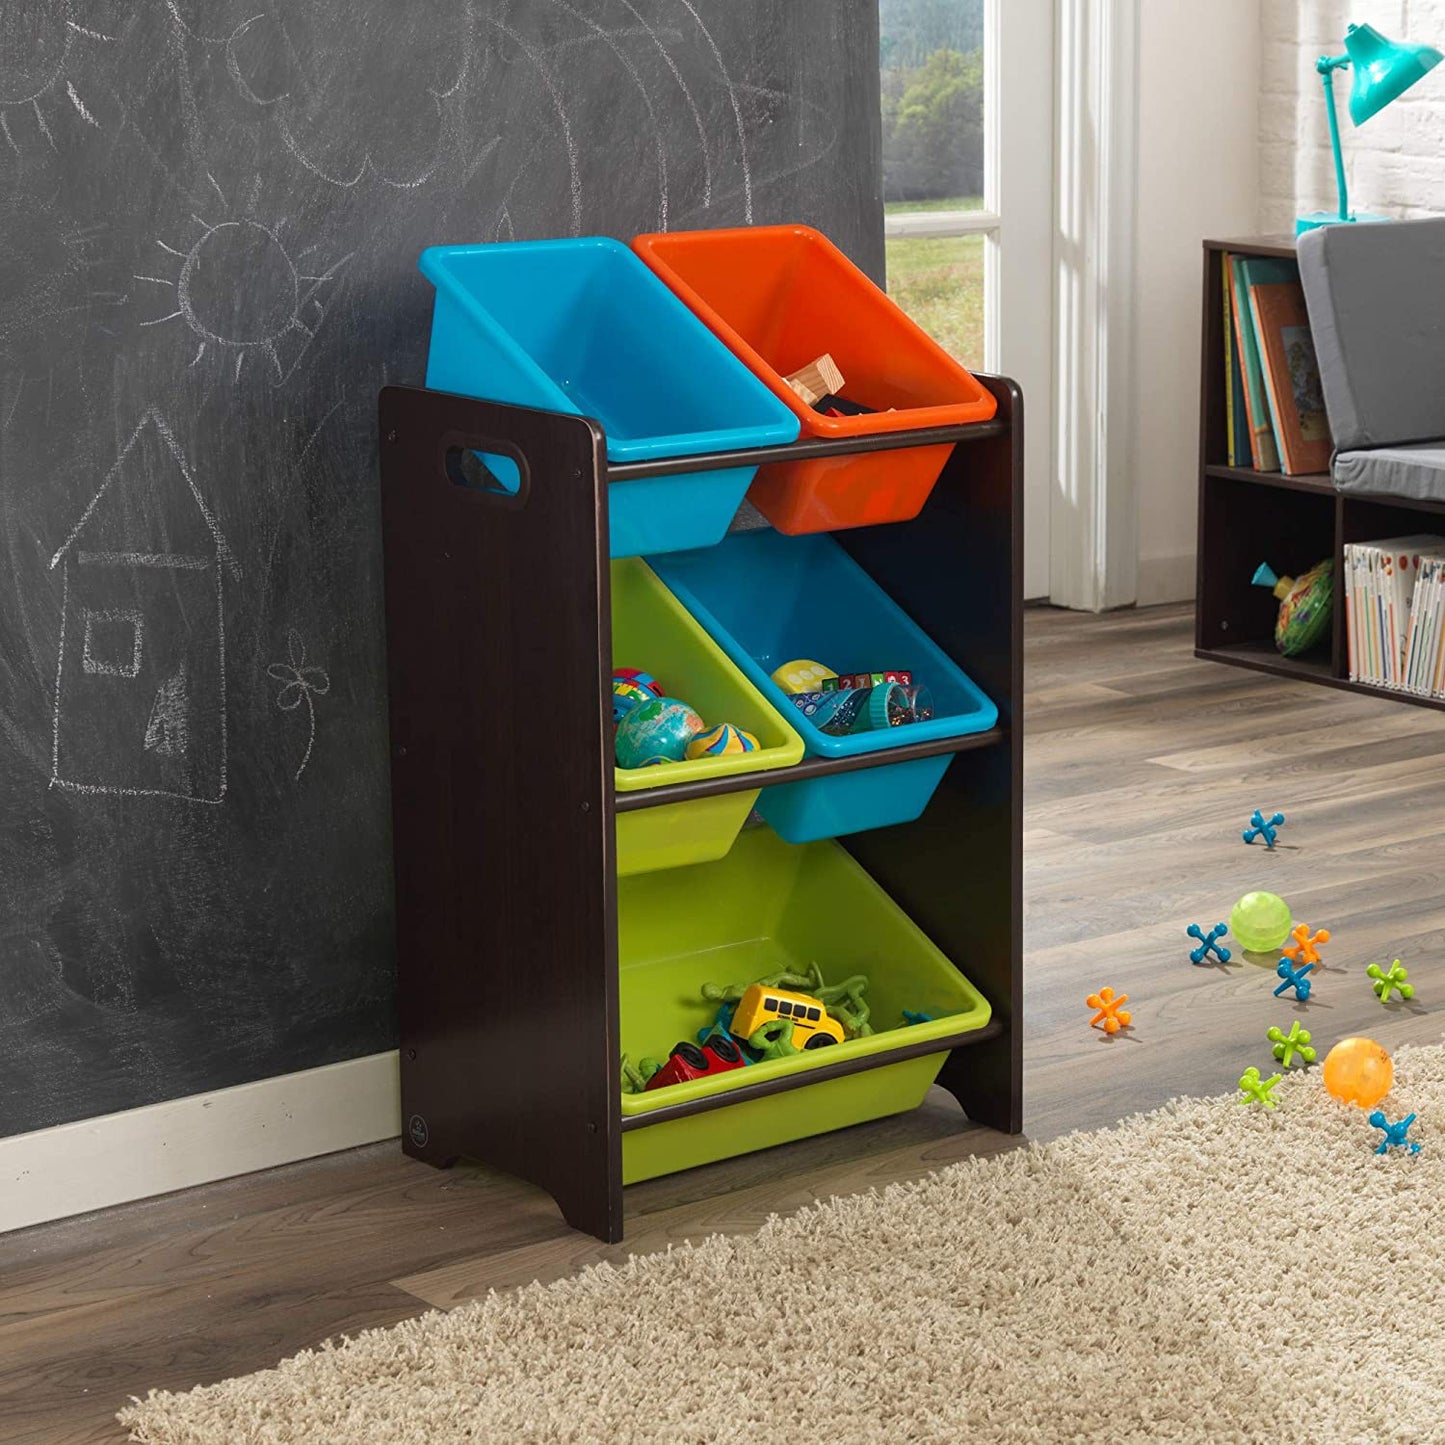 Wooden Children's Toy Storage Unit with Five Plastic Bins - Brights